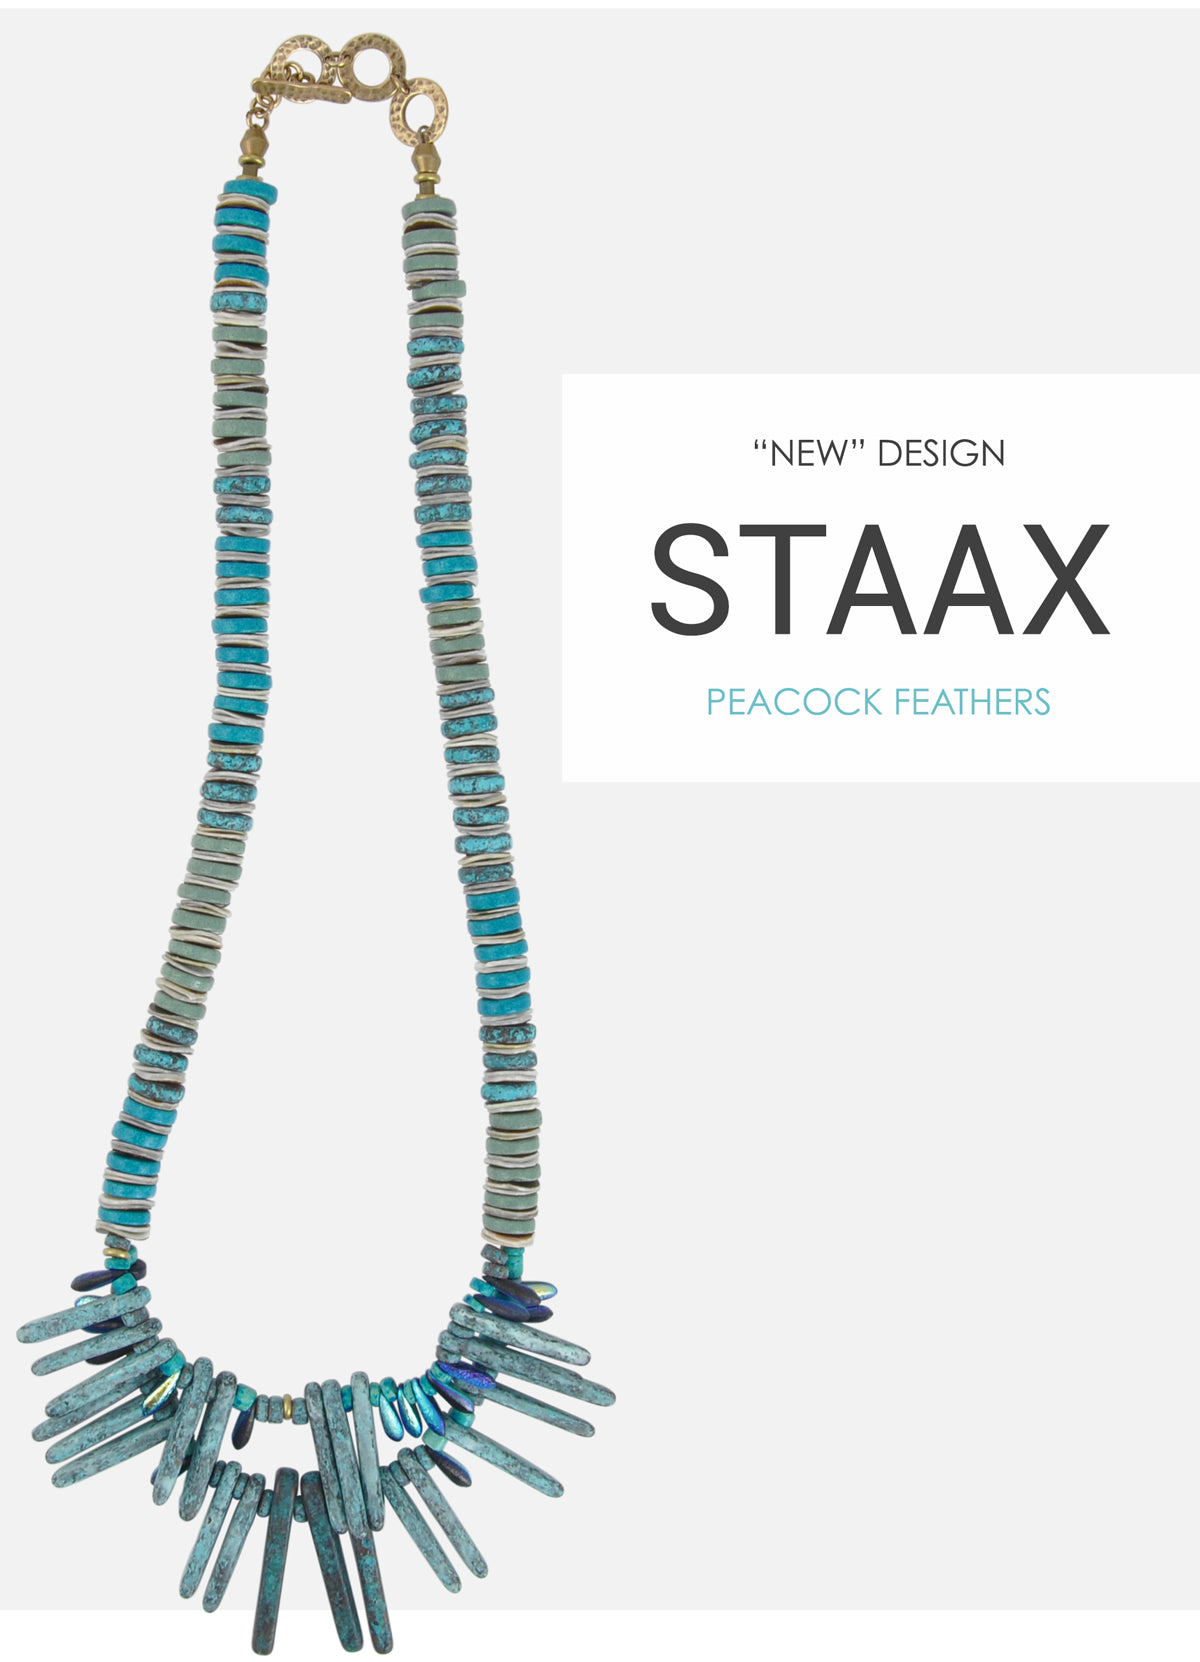 Staax Peacock Feathers Dagger Necklace Blog Tamara Scott Designs